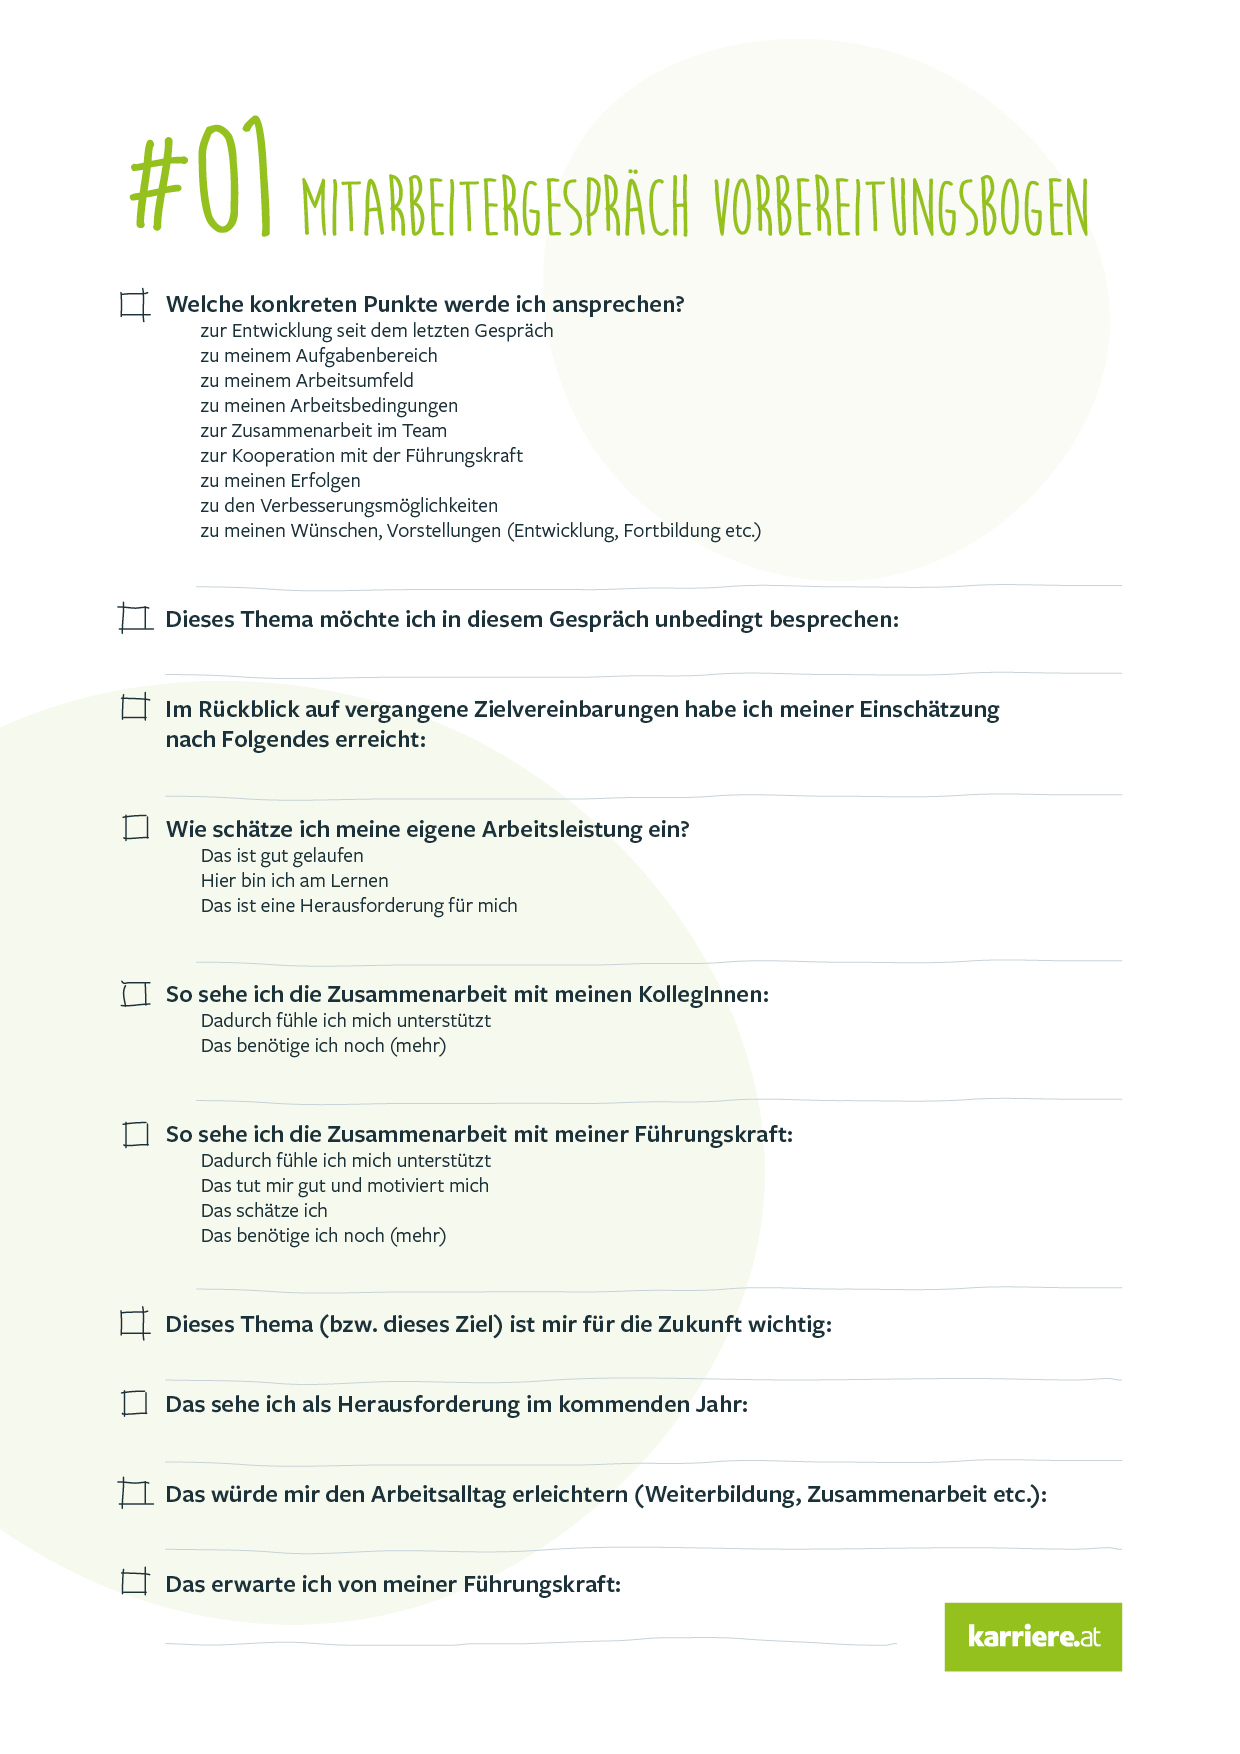 Mitarbeitergespraech Checkliste